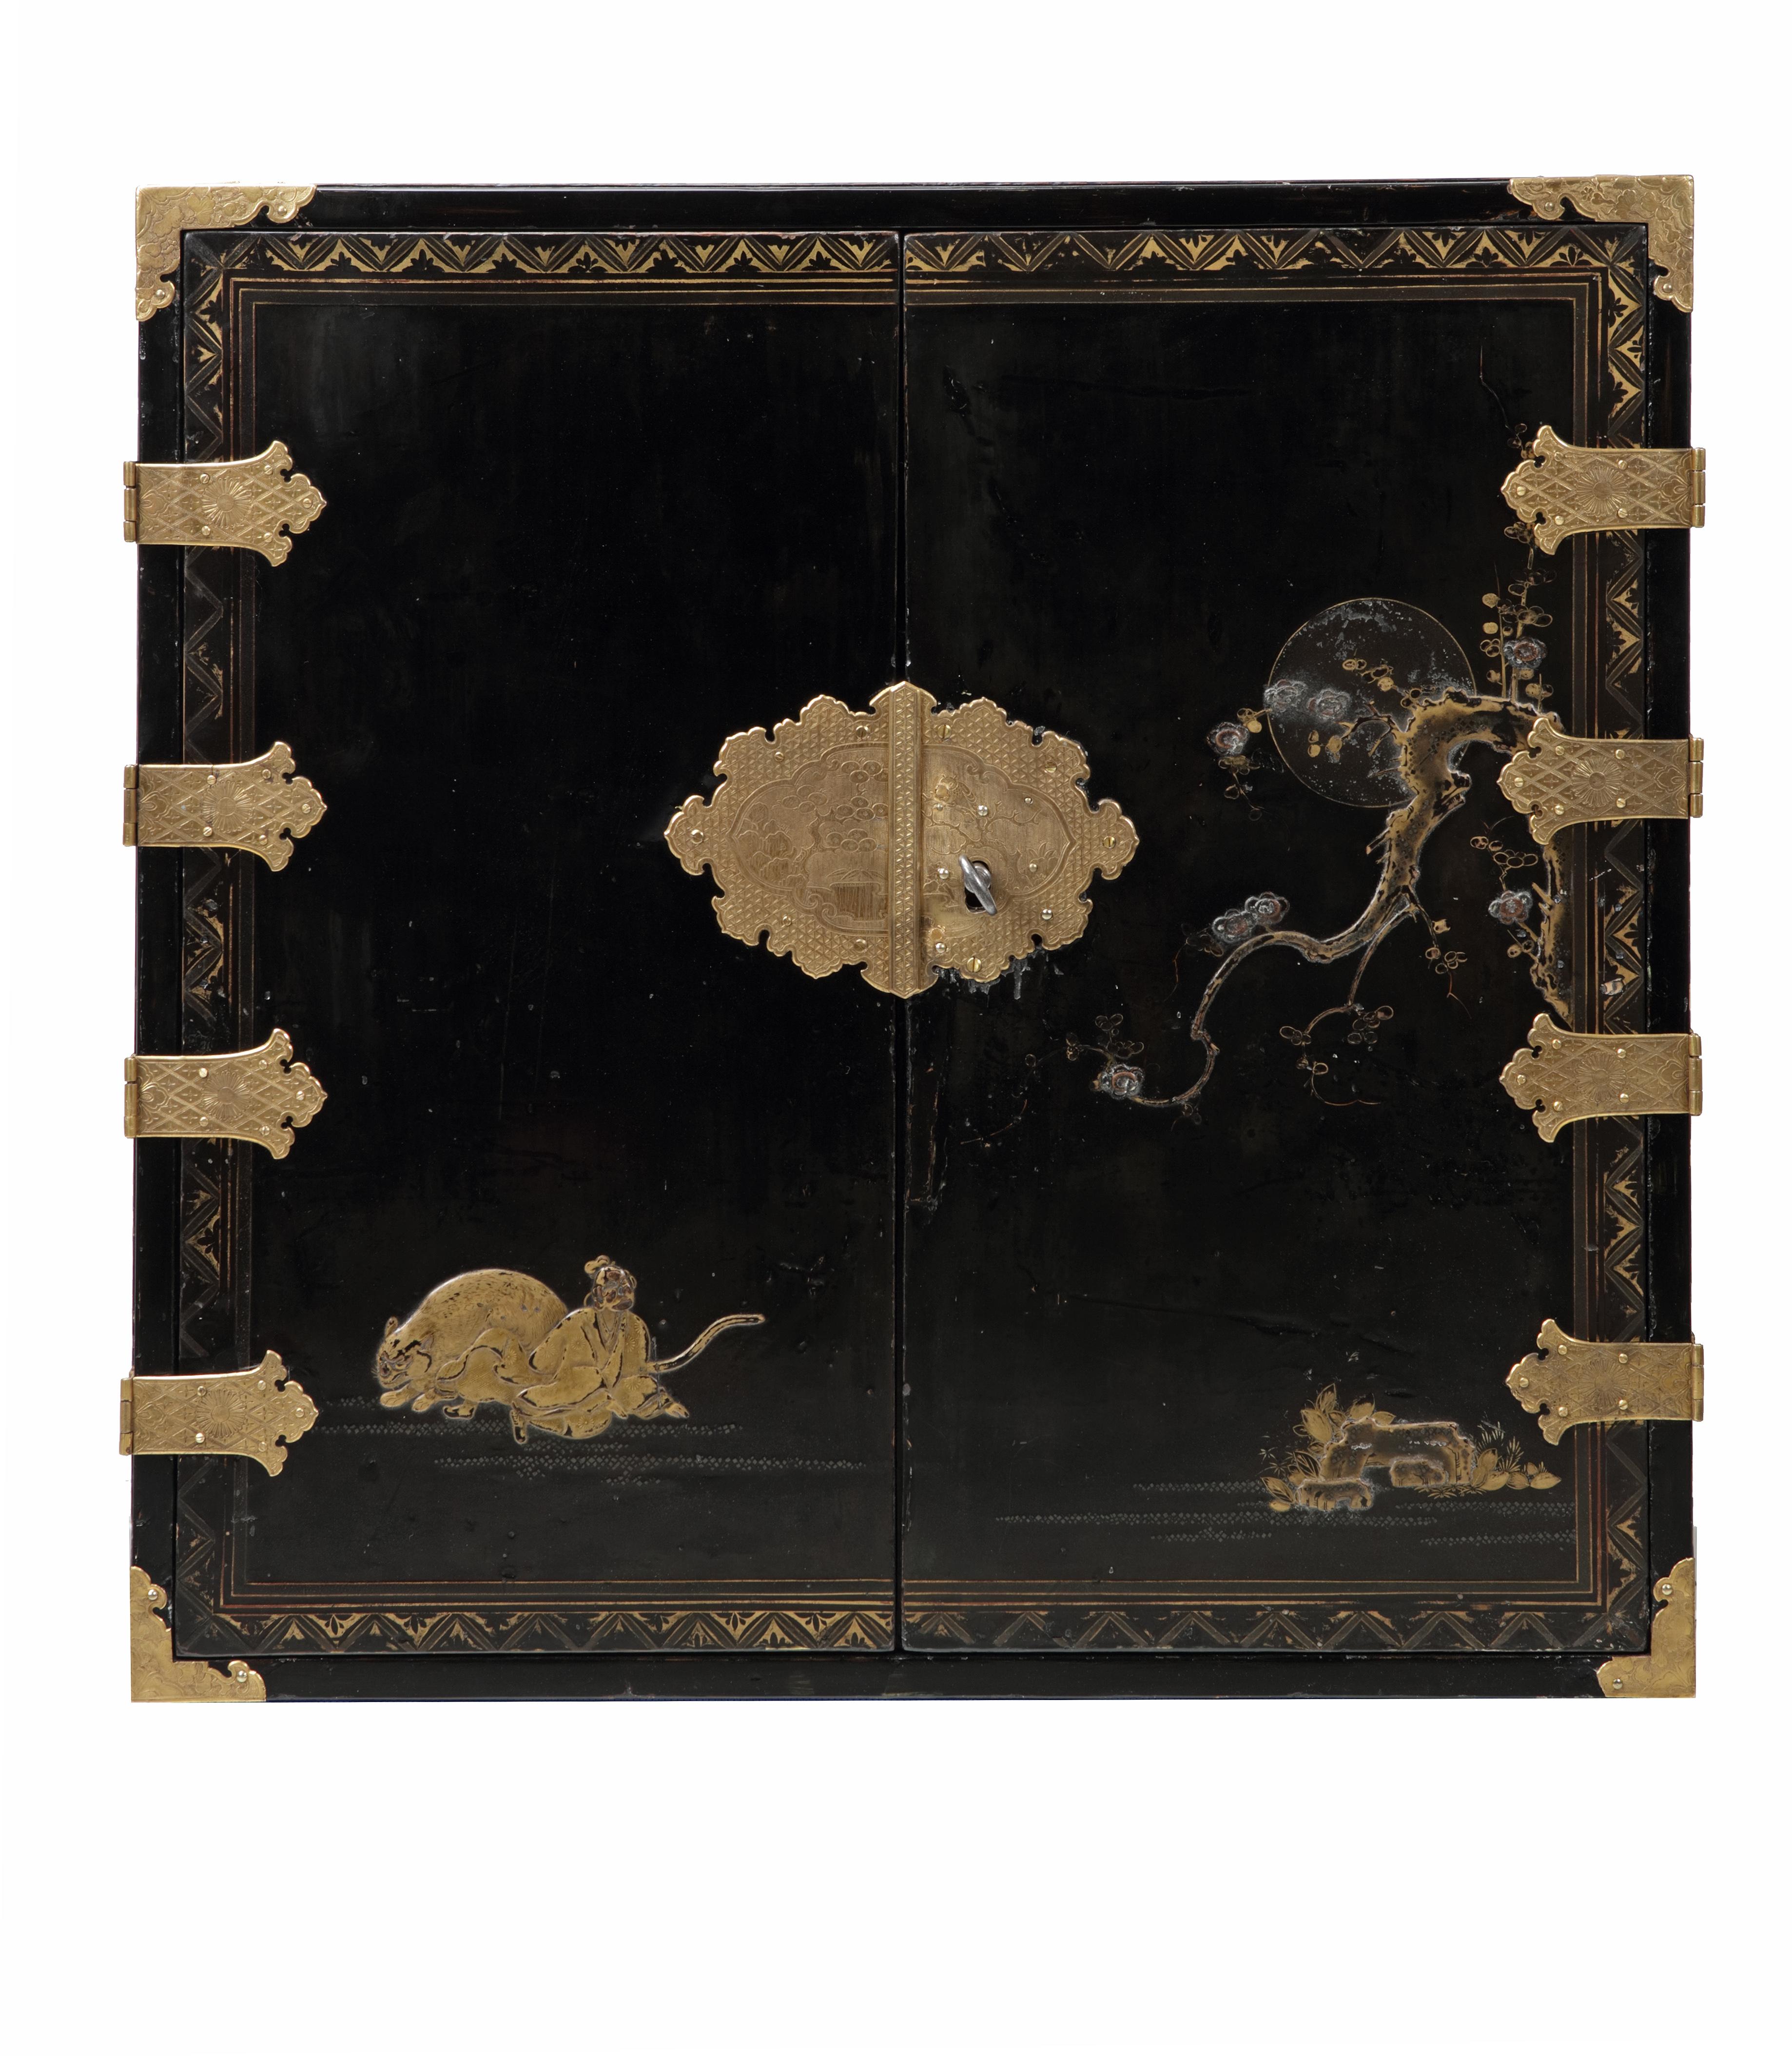 Un beau meuble japonais en laque de style pictural avec des montures en métal doré



Kyoto, période Edo, 1670-1690

Décorée en laque japonaise en relief, fond de laque noire décoré en hiramaki-e, takamaki-e, kirigane et nashiji en or, argent